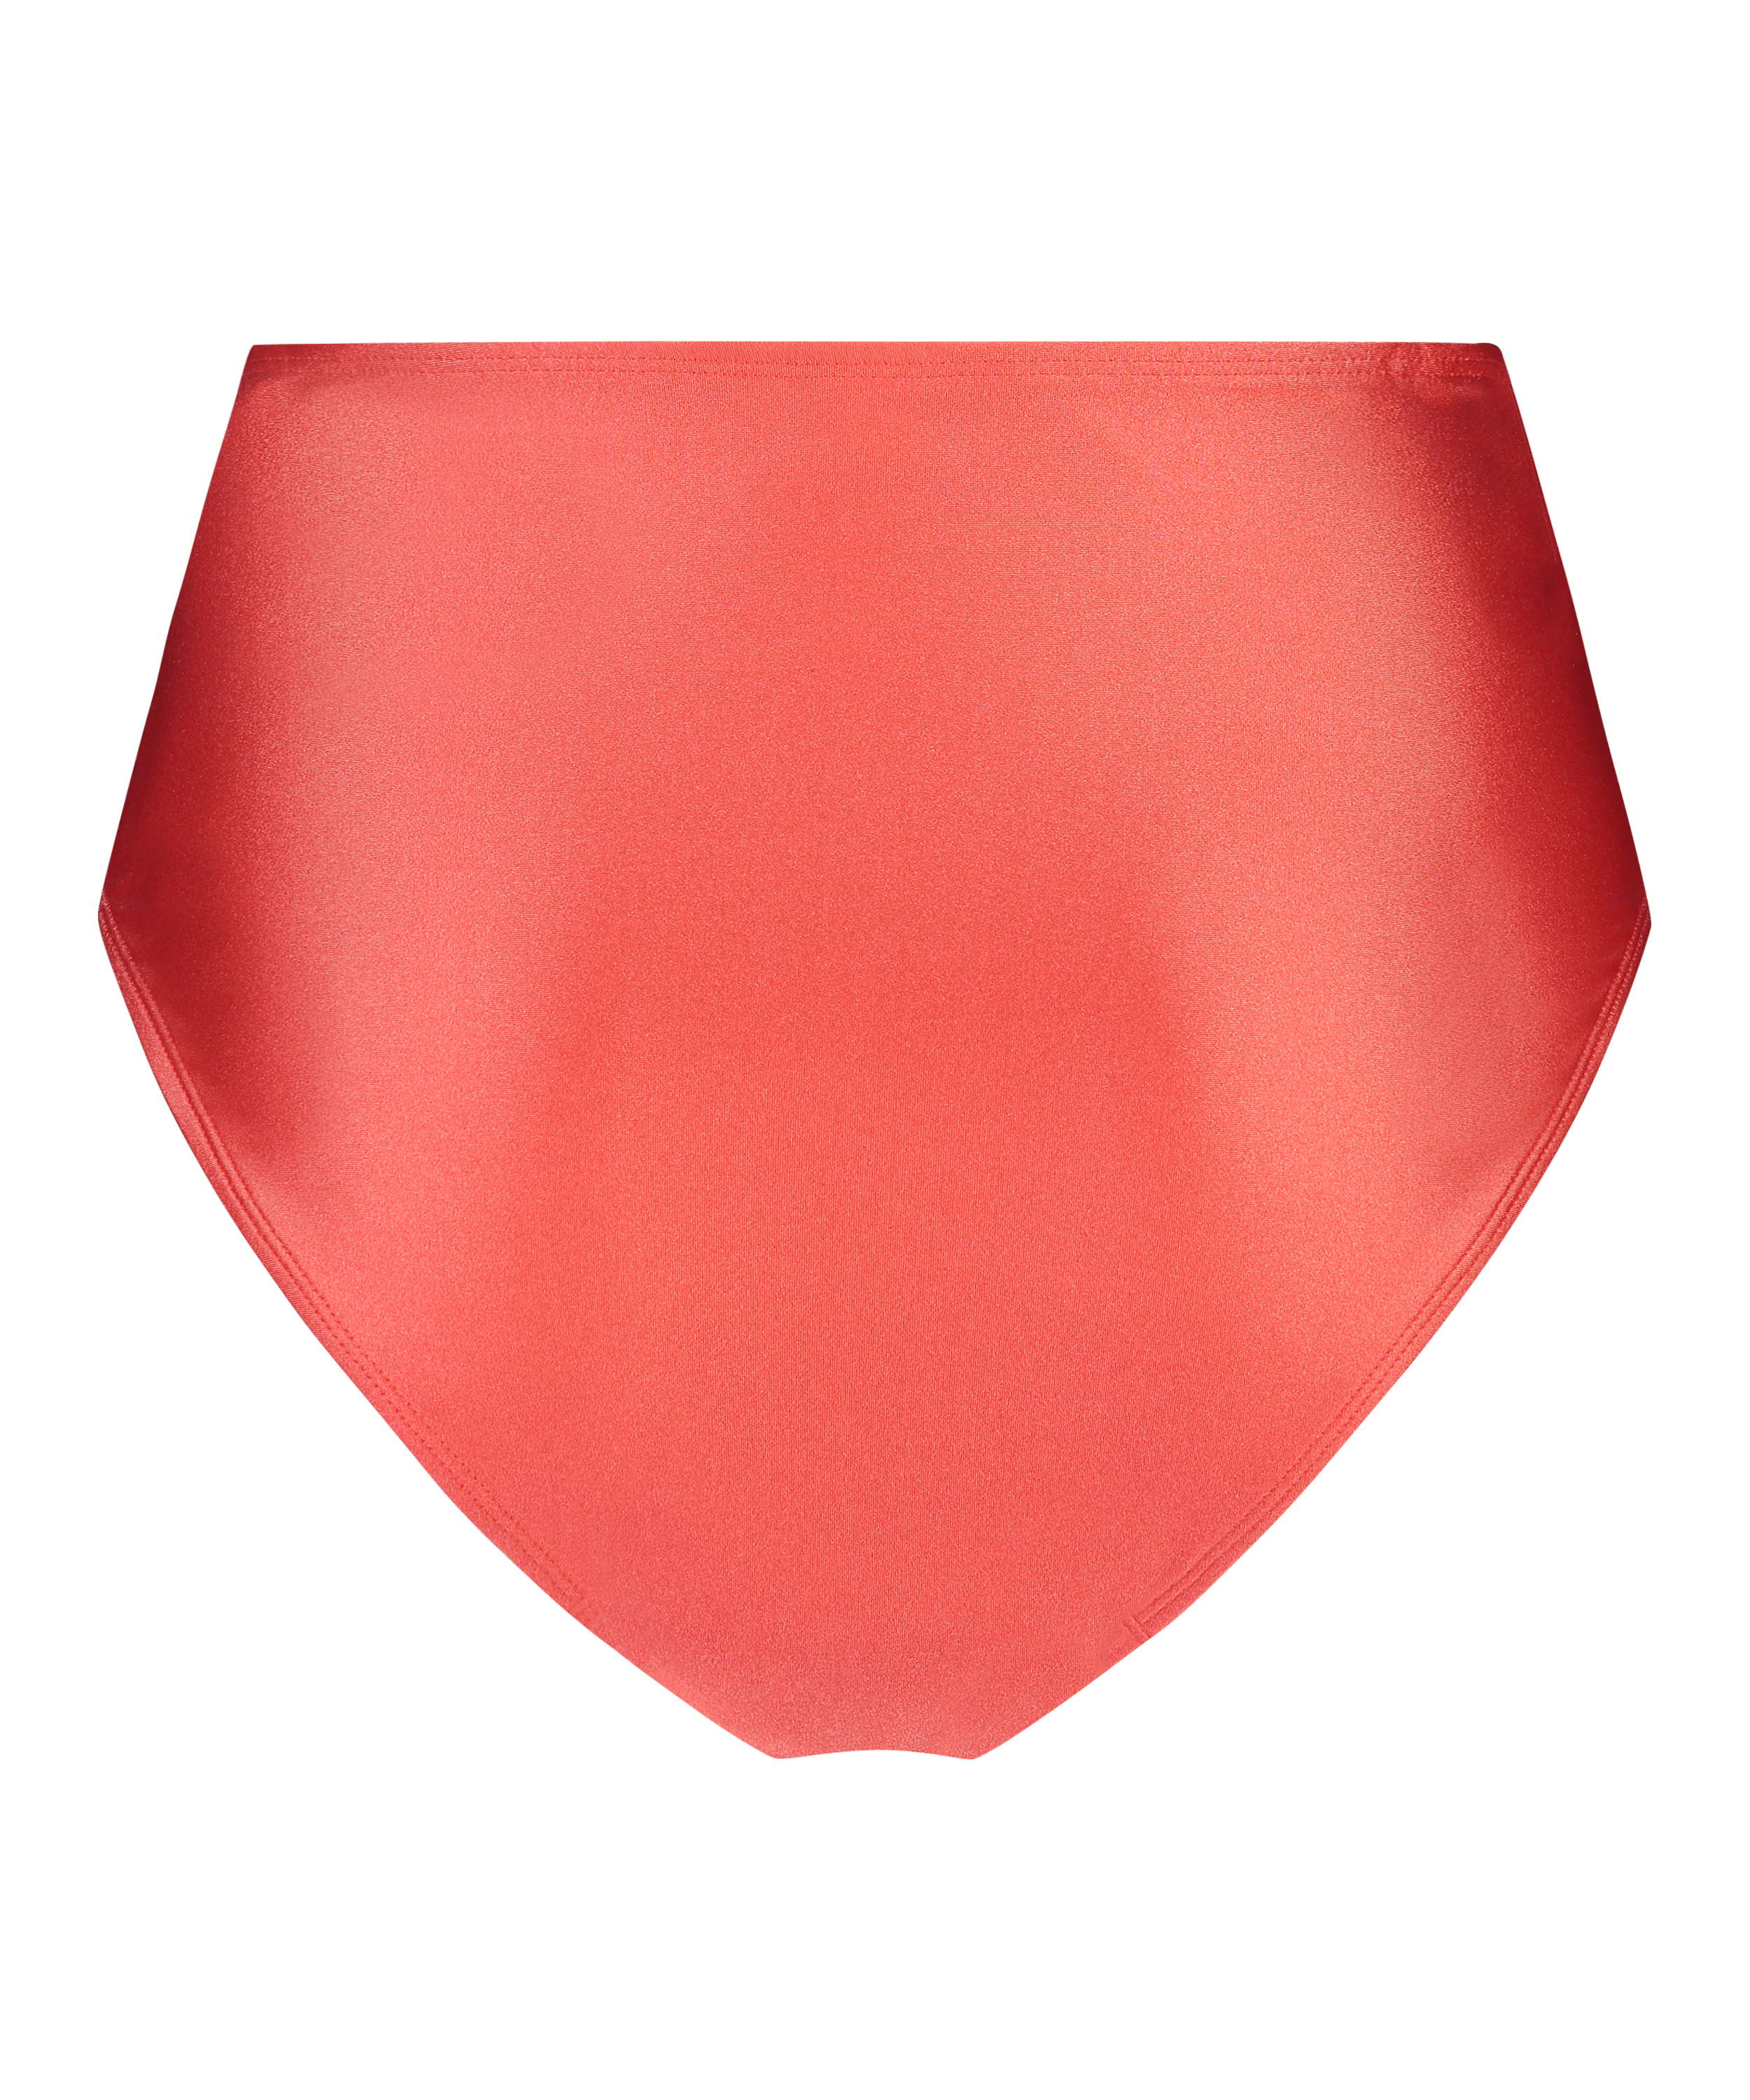 Luxe Shaping Bikini Bottoms, Red, main